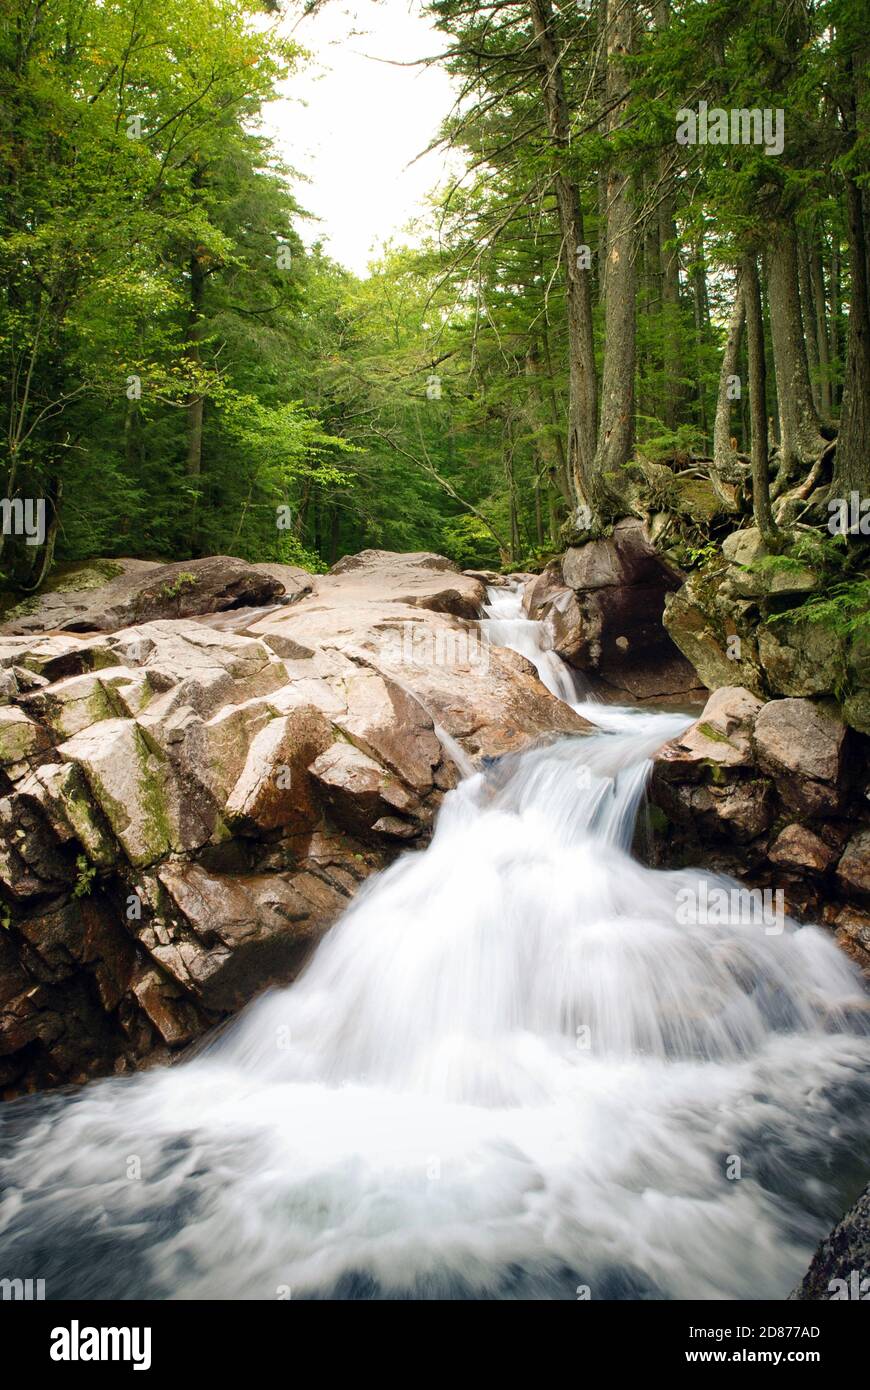 Acqua che cade su rocce in un torrente di montagna nel New Hampshire, Stati Uniti. La velocità dell'otturatore ridotta consente di sfocare il movimento dell'acqua Foto Stock